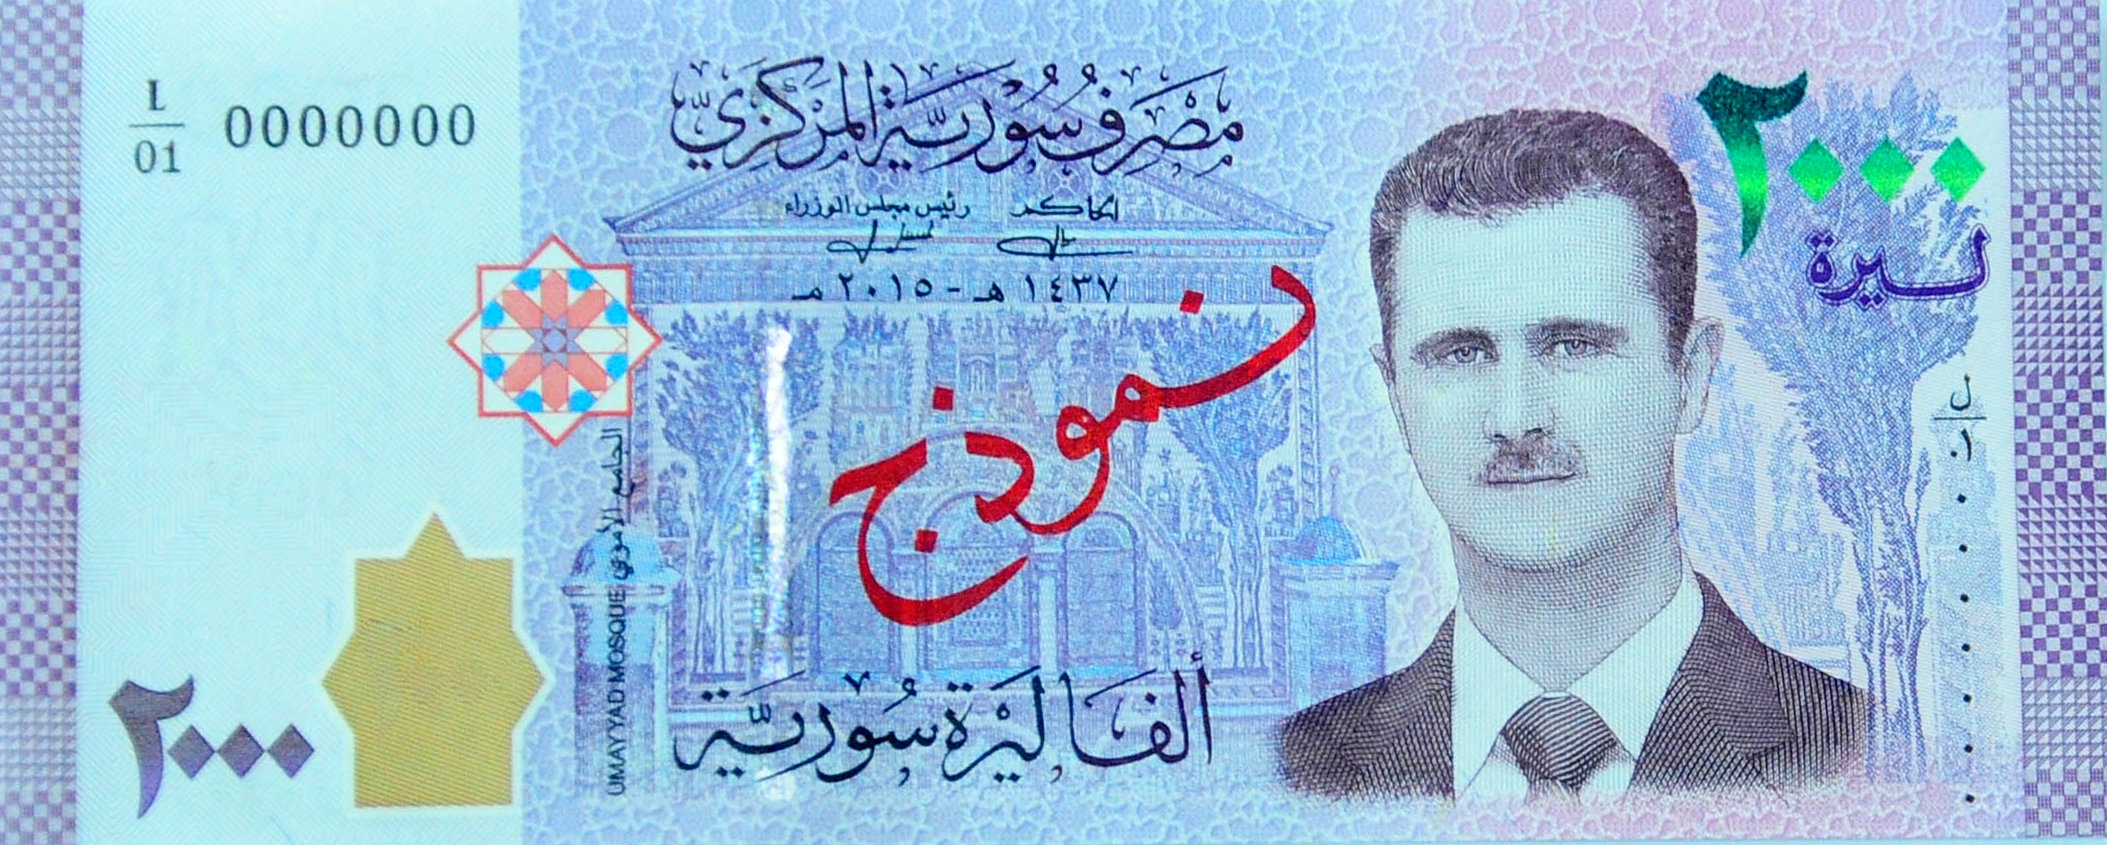 صورة بشار الأسد على عملة ورقية جديدة فى سوريا